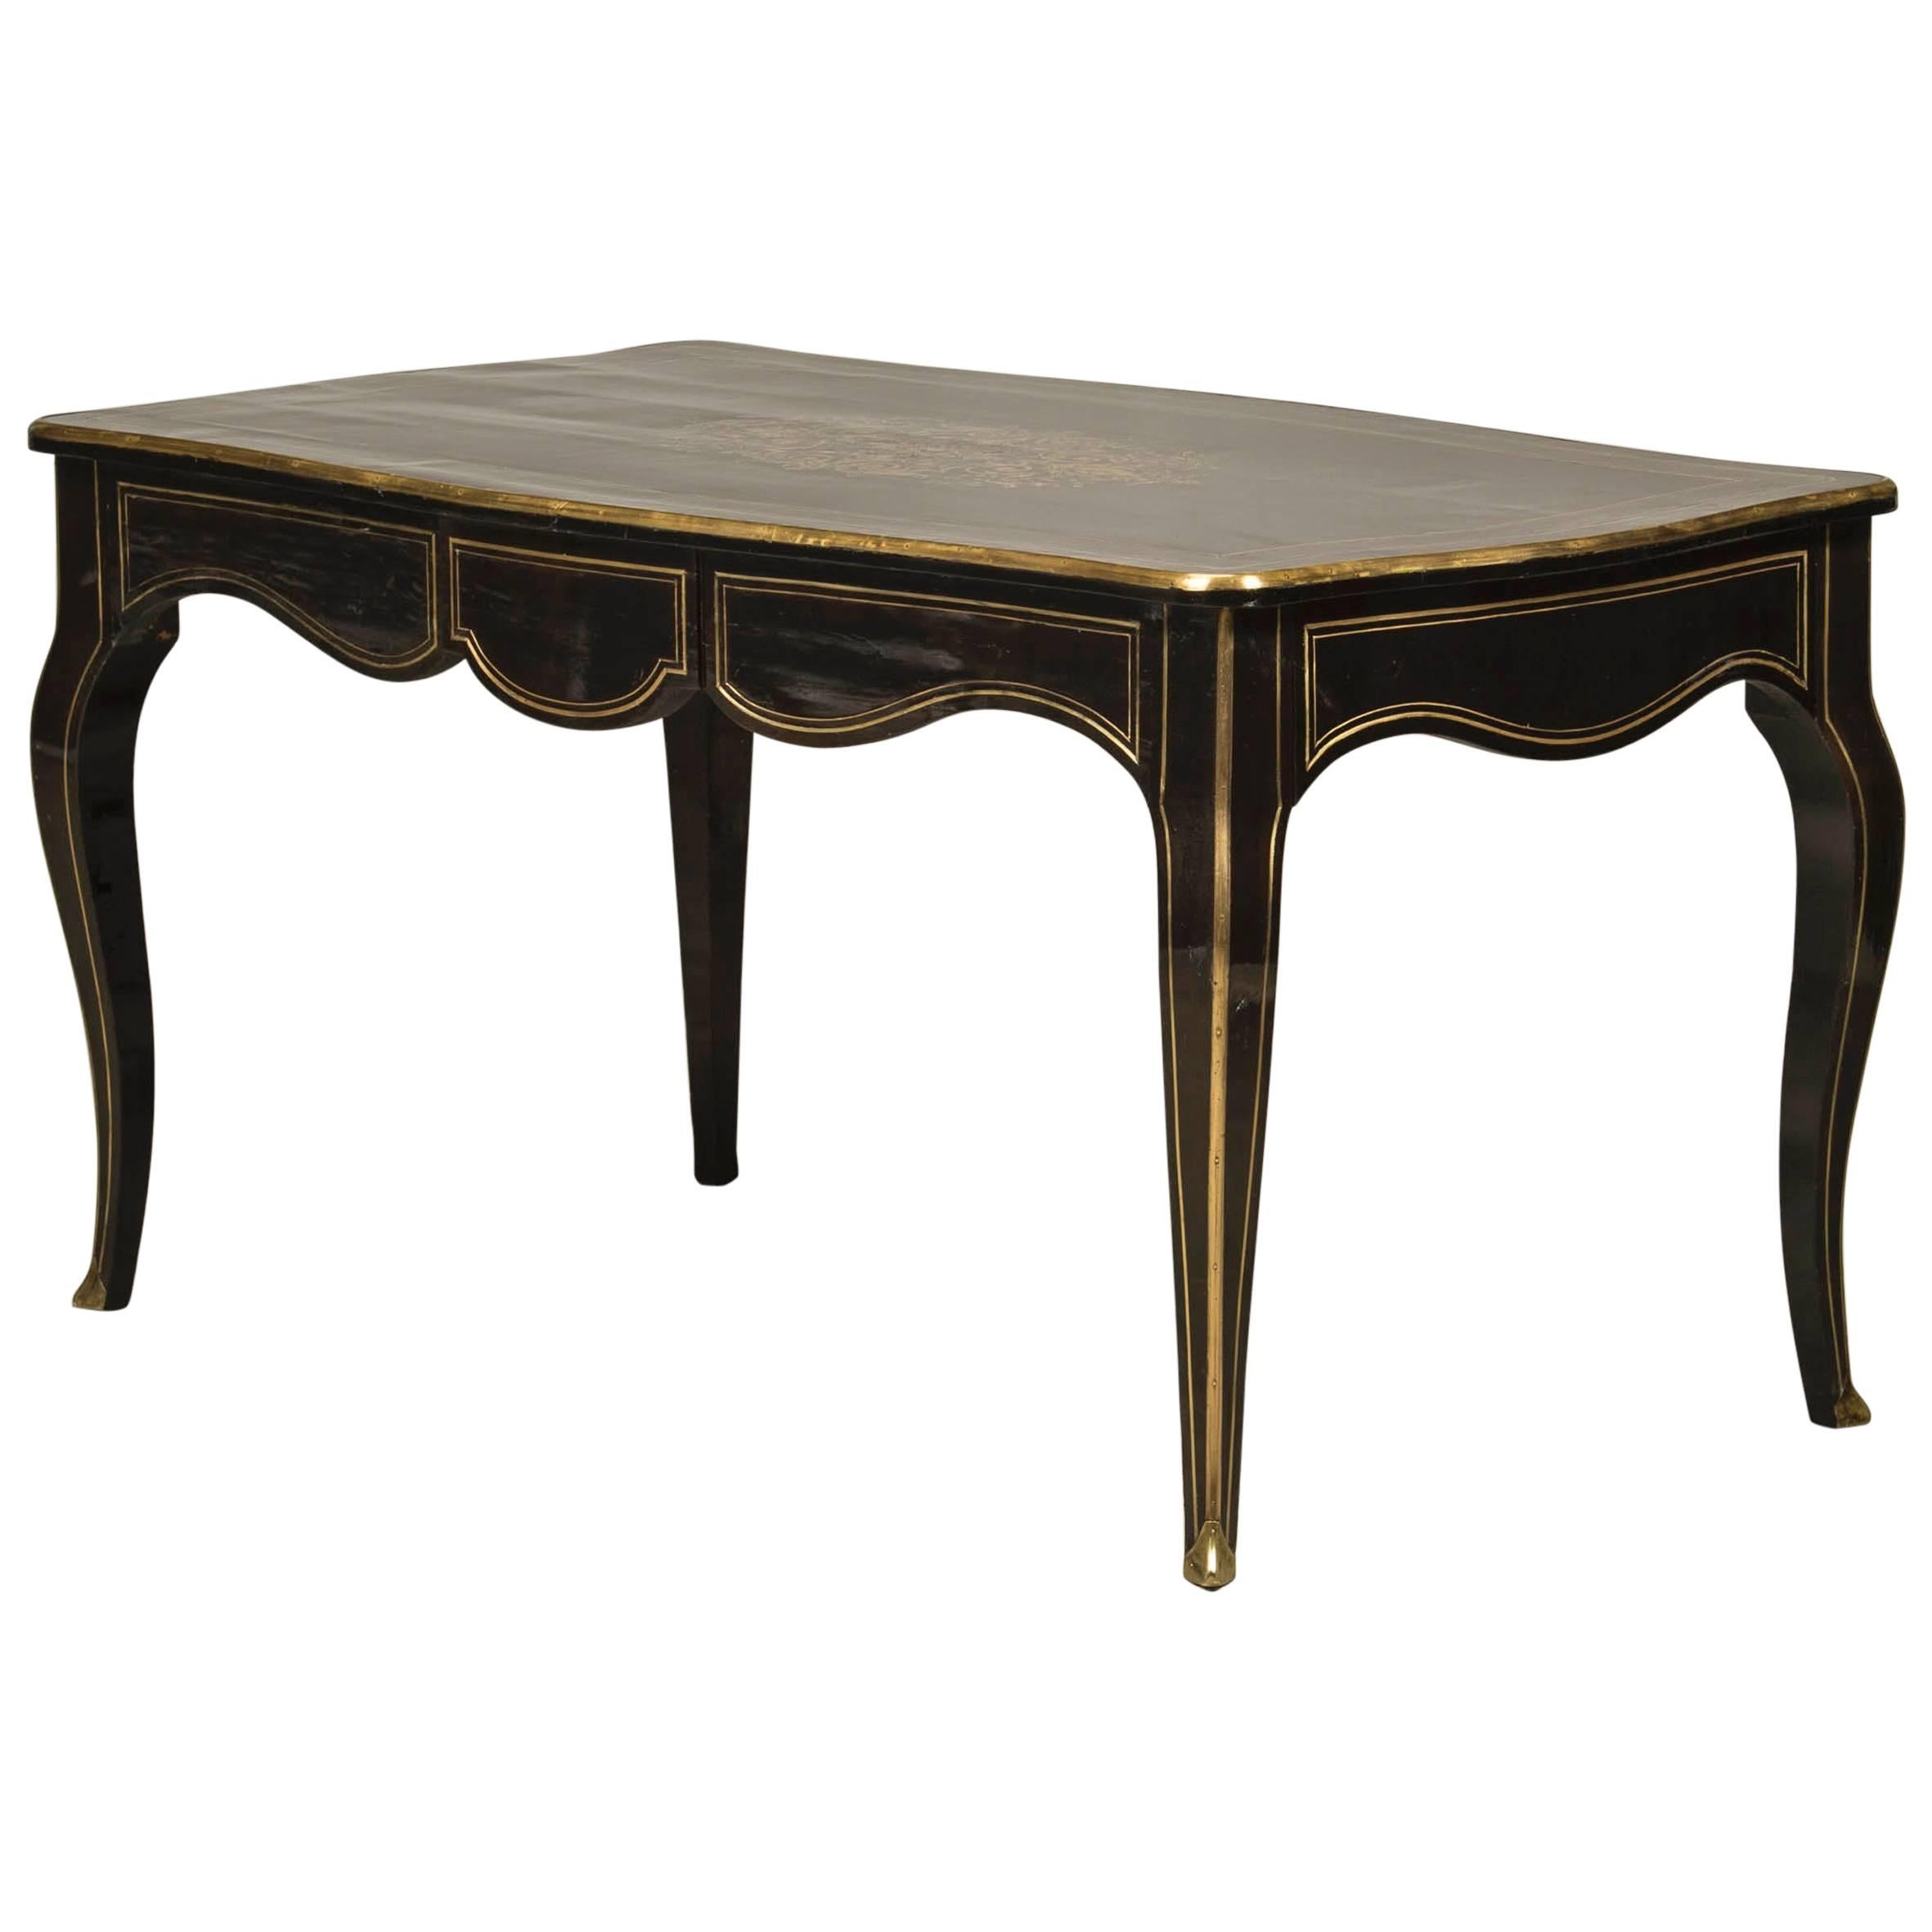 Napoleon III Table, Boulle Style, in Ebonized and Ebony Veneered Wood